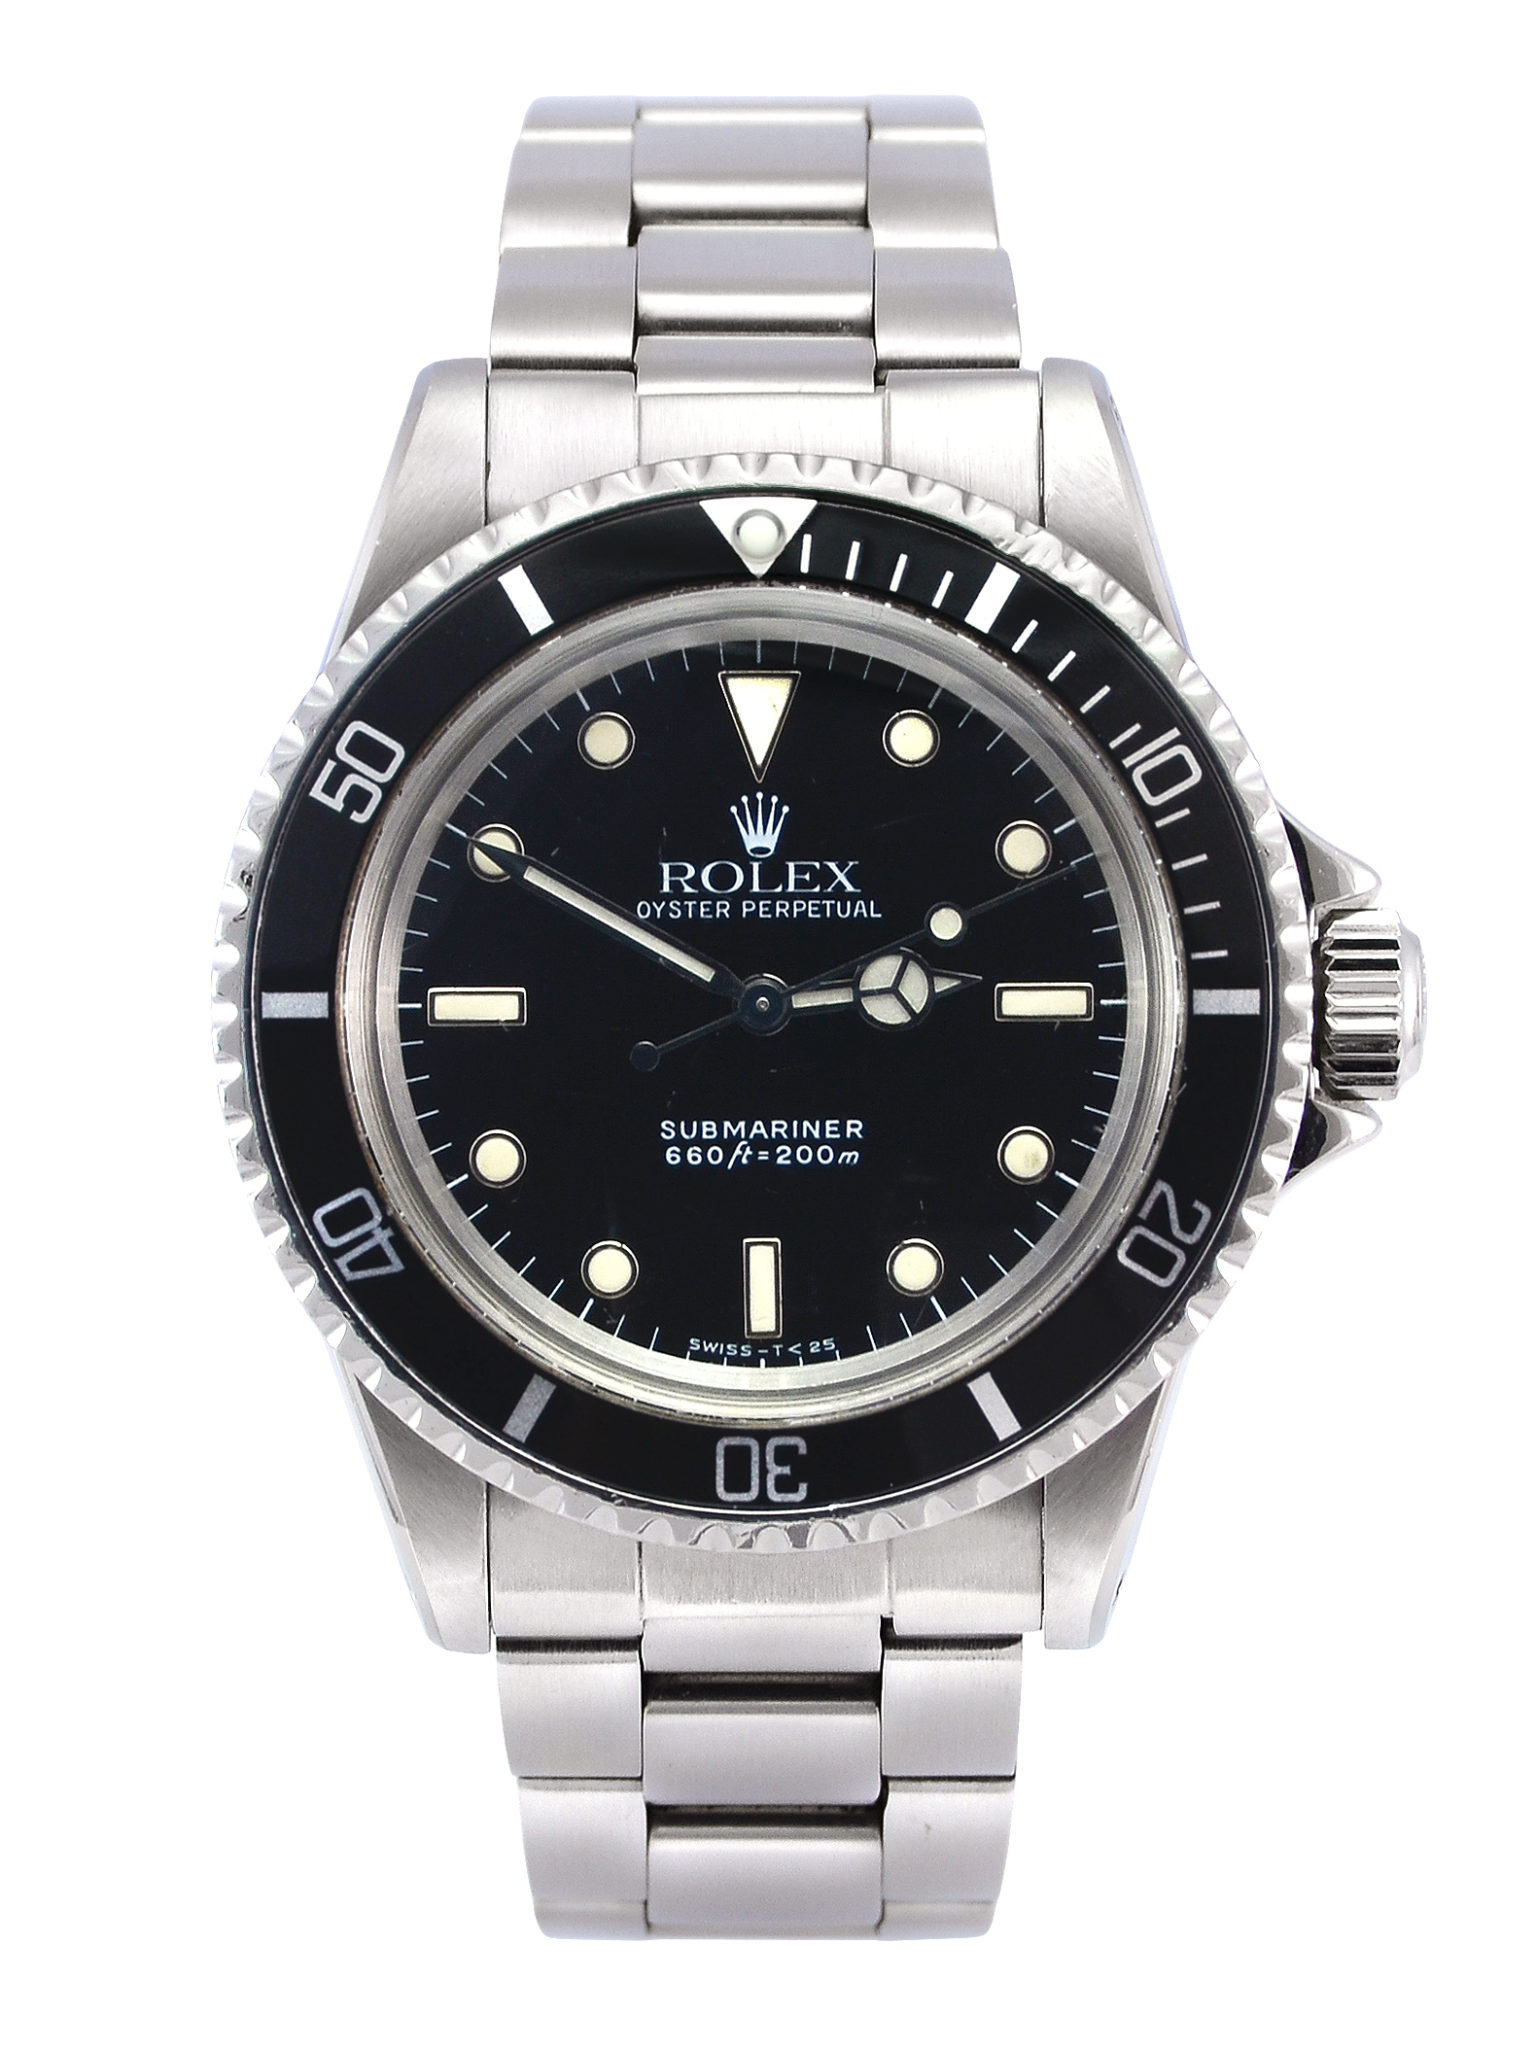 Vintage Rolex Submariner No Date 5513 